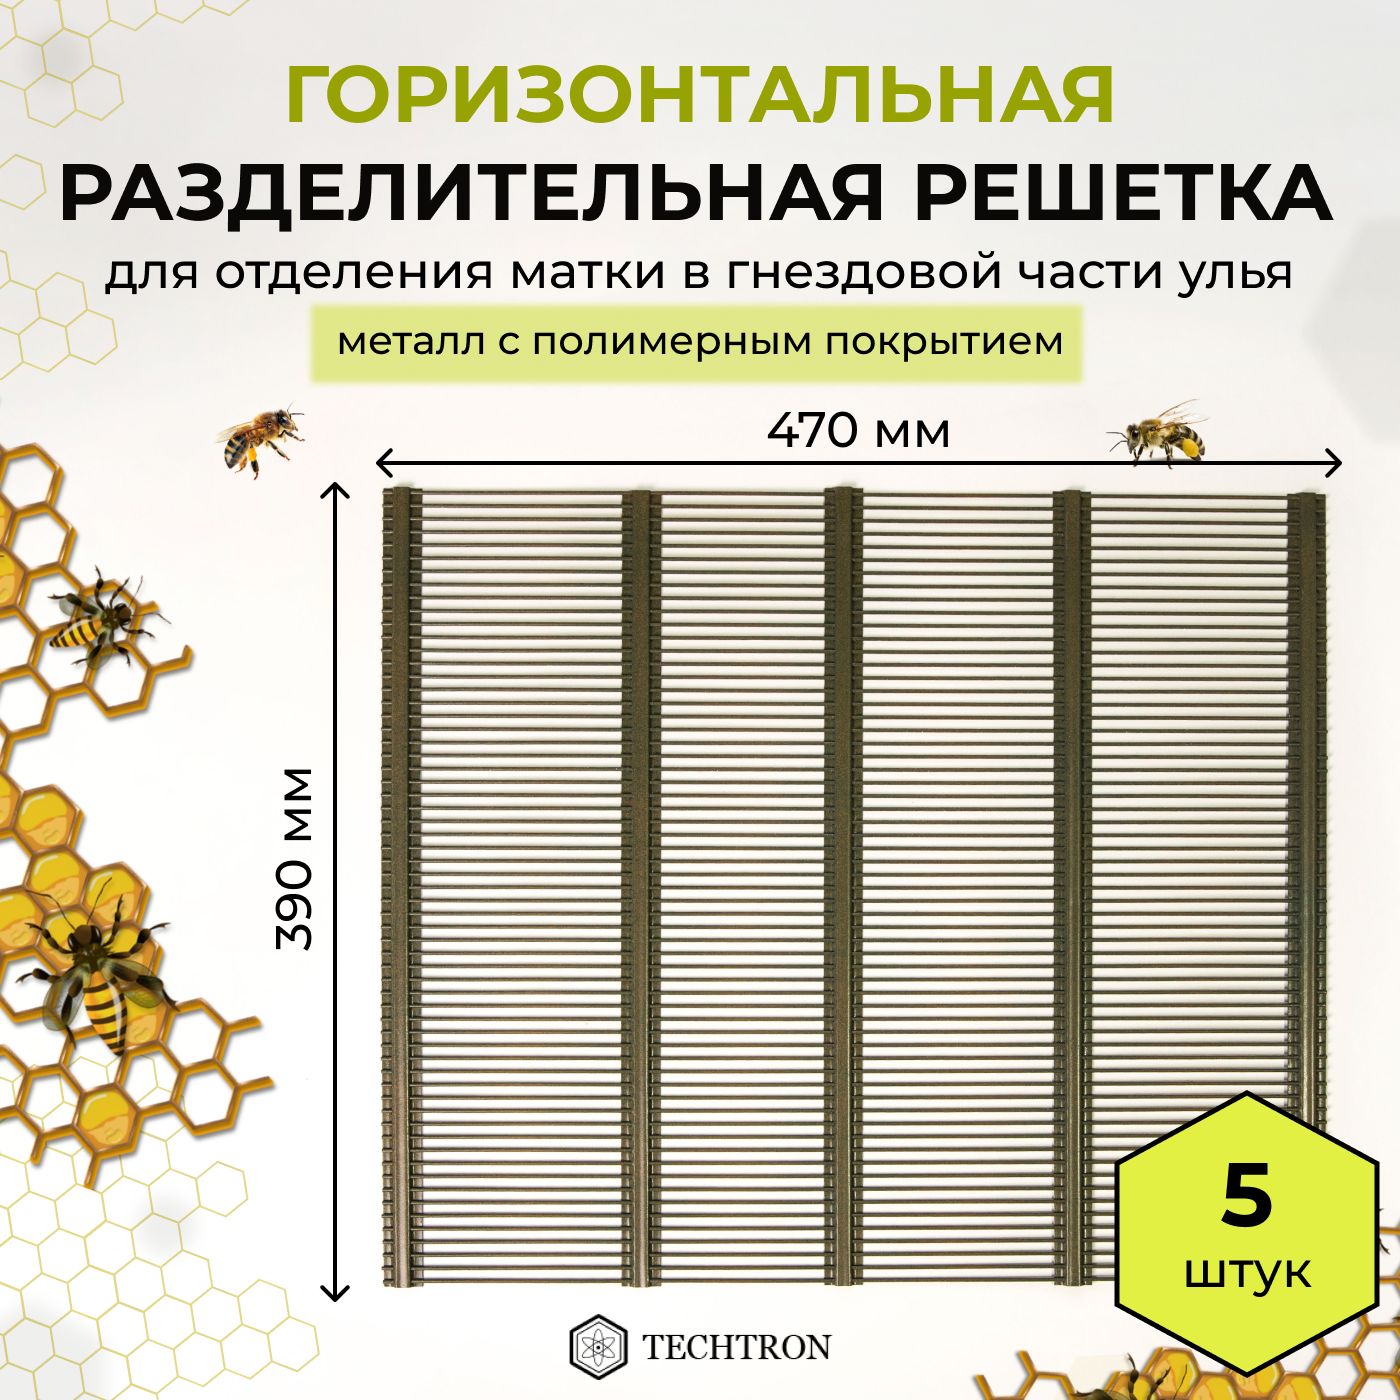 Решетка разделительная для пчел купить в интернет-магазине luchistii-sudak.ru